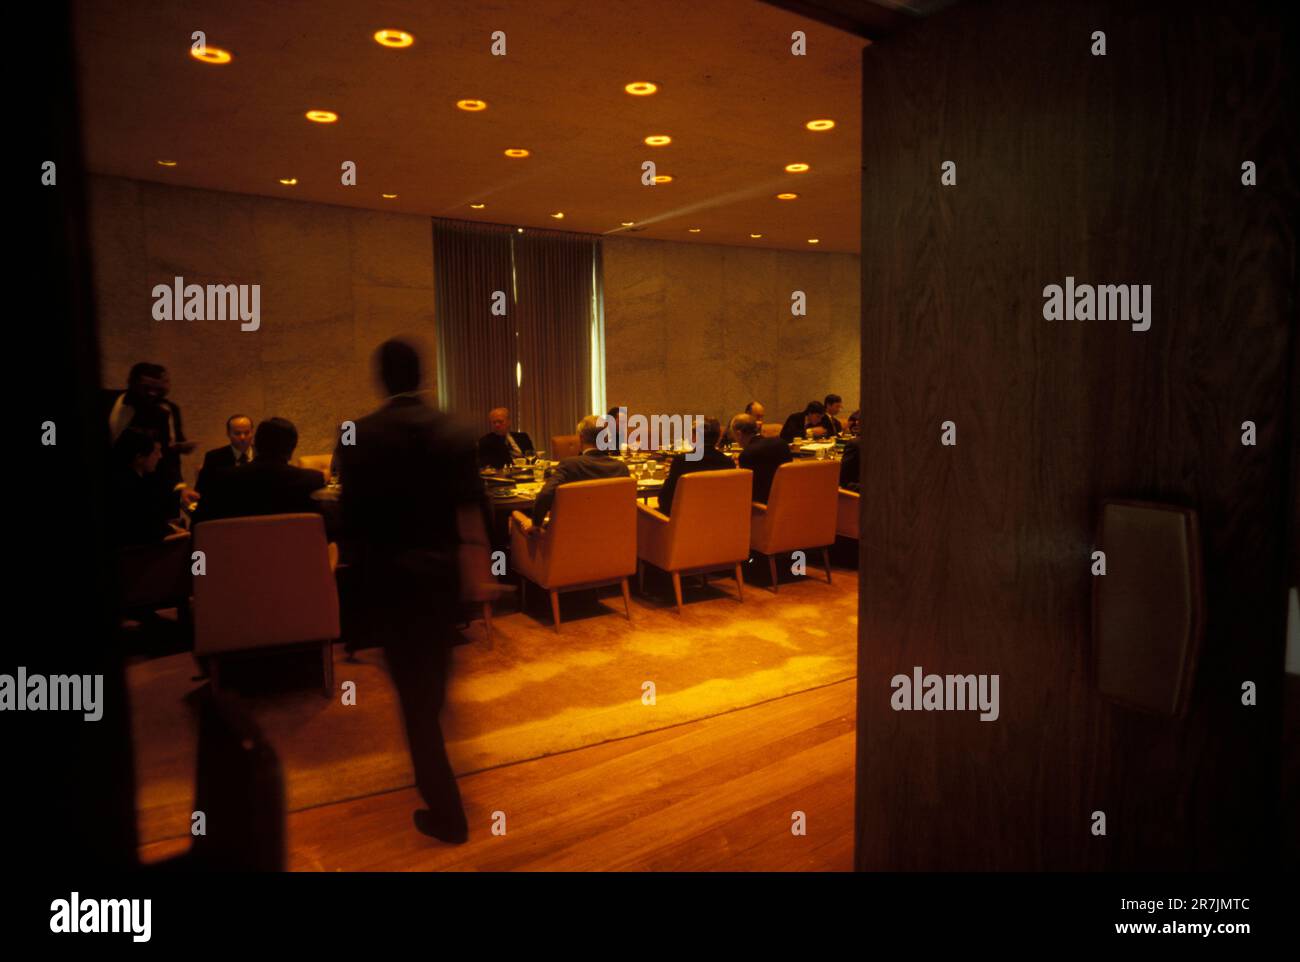 Der ehemalige Vorsitzende eines großen Finanzunternehmens nimmt an einem formellen Abendessen in einem schwach beleuchteten Bankettsaal Teil. Stockfoto